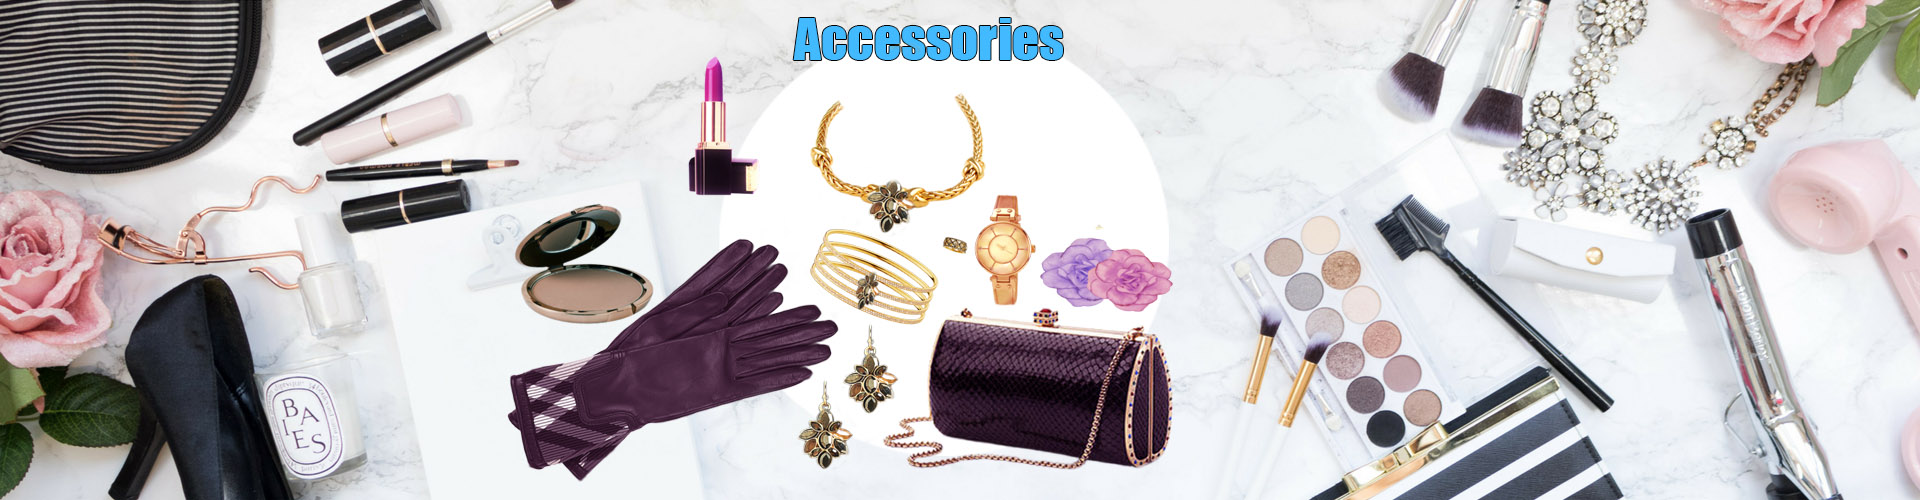 Fashion accessories